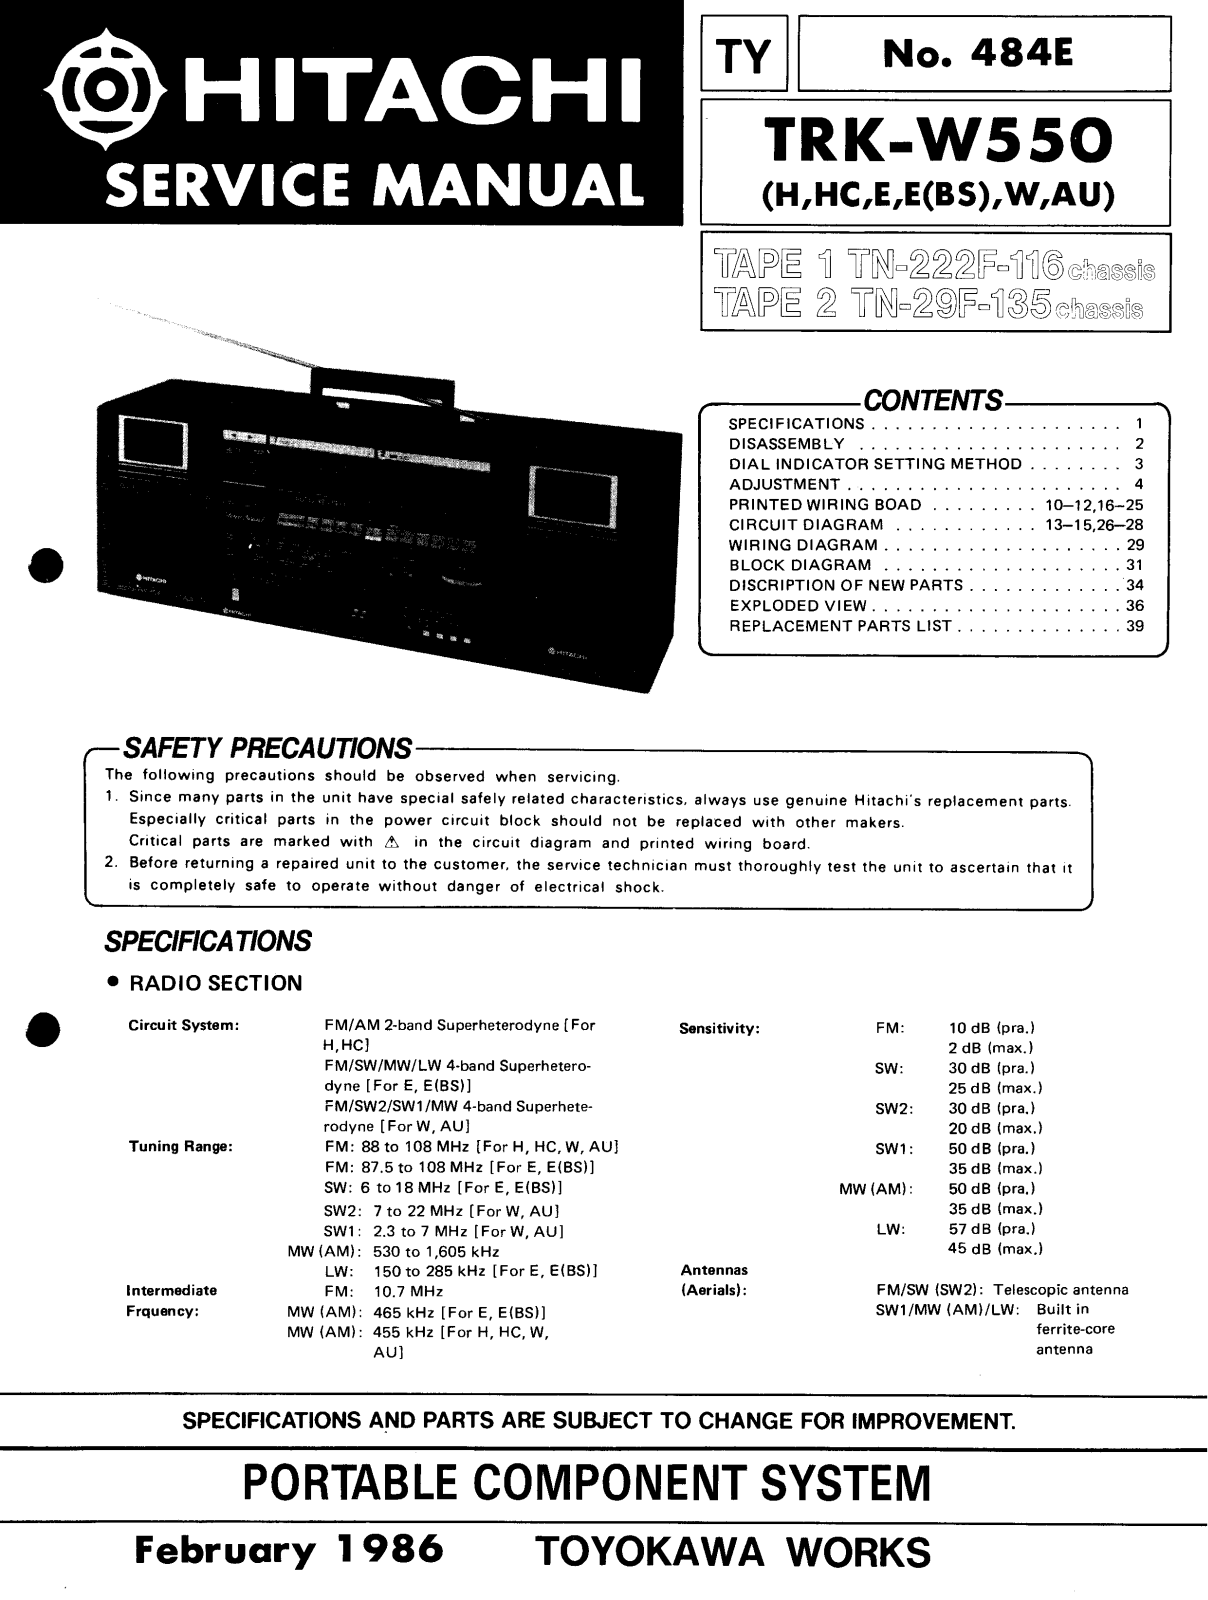 Hitachi TRK-W550 Service Manual